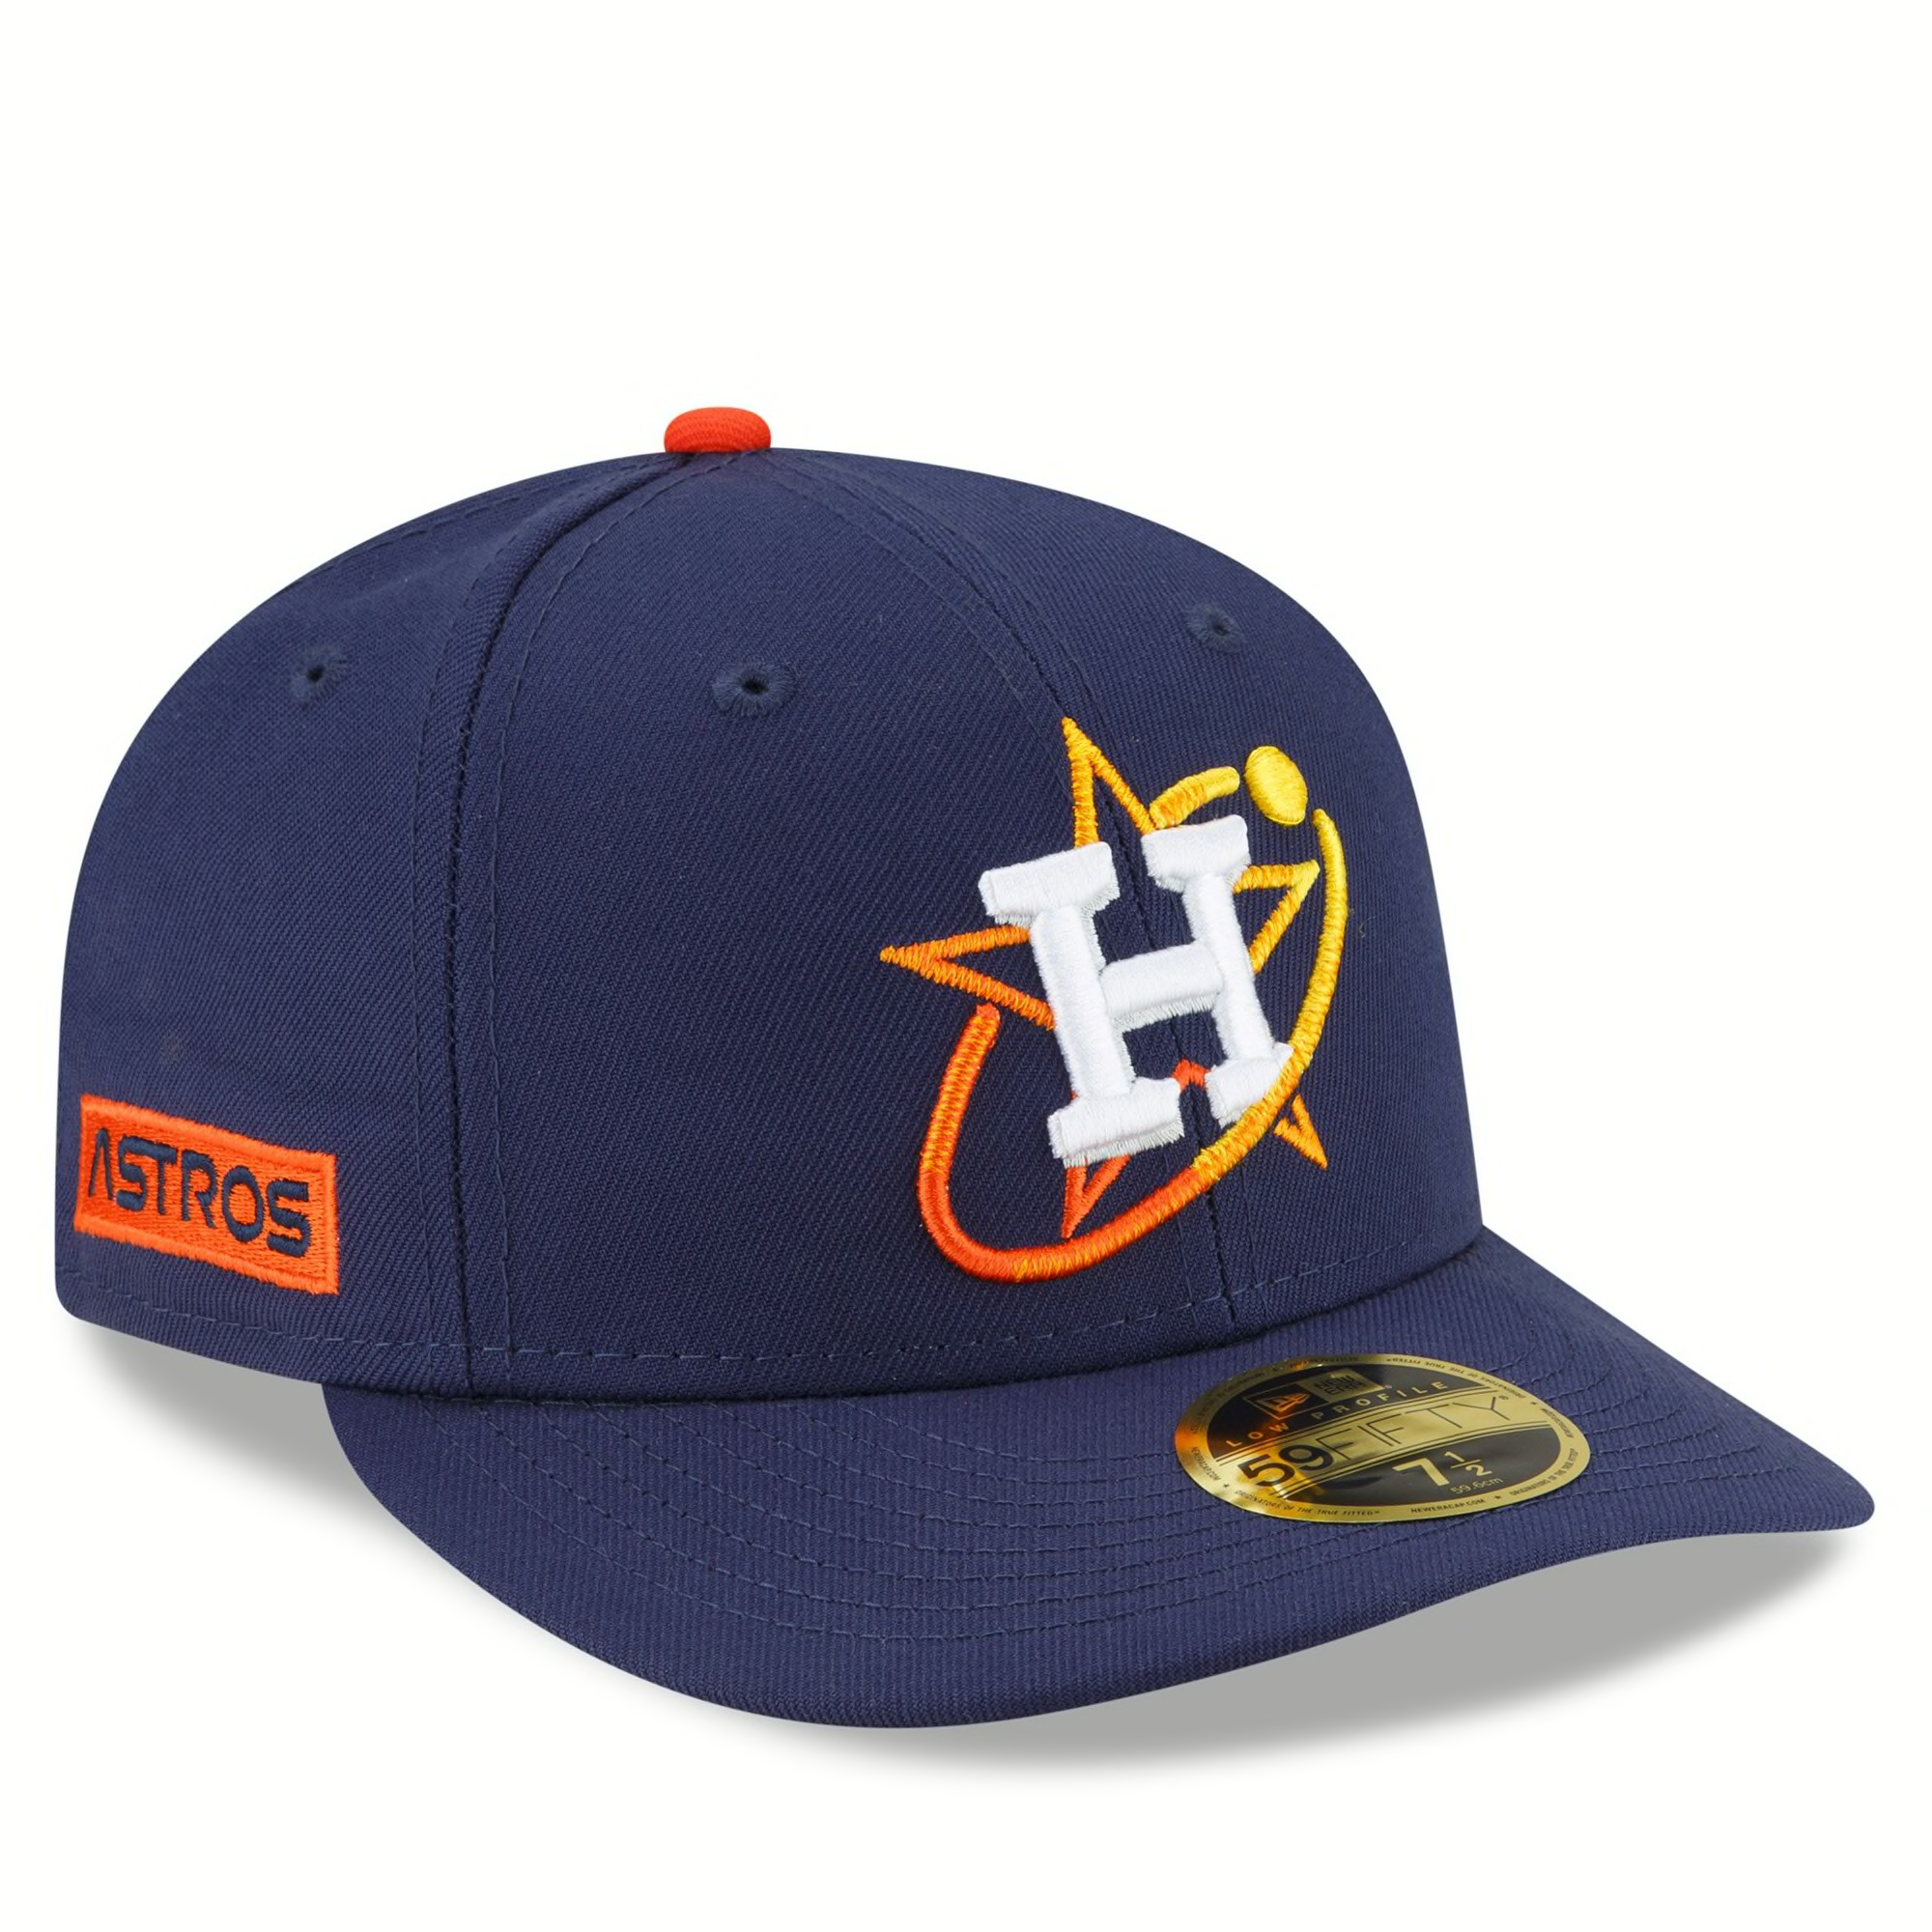 Houston Astros City Connect New Era hat